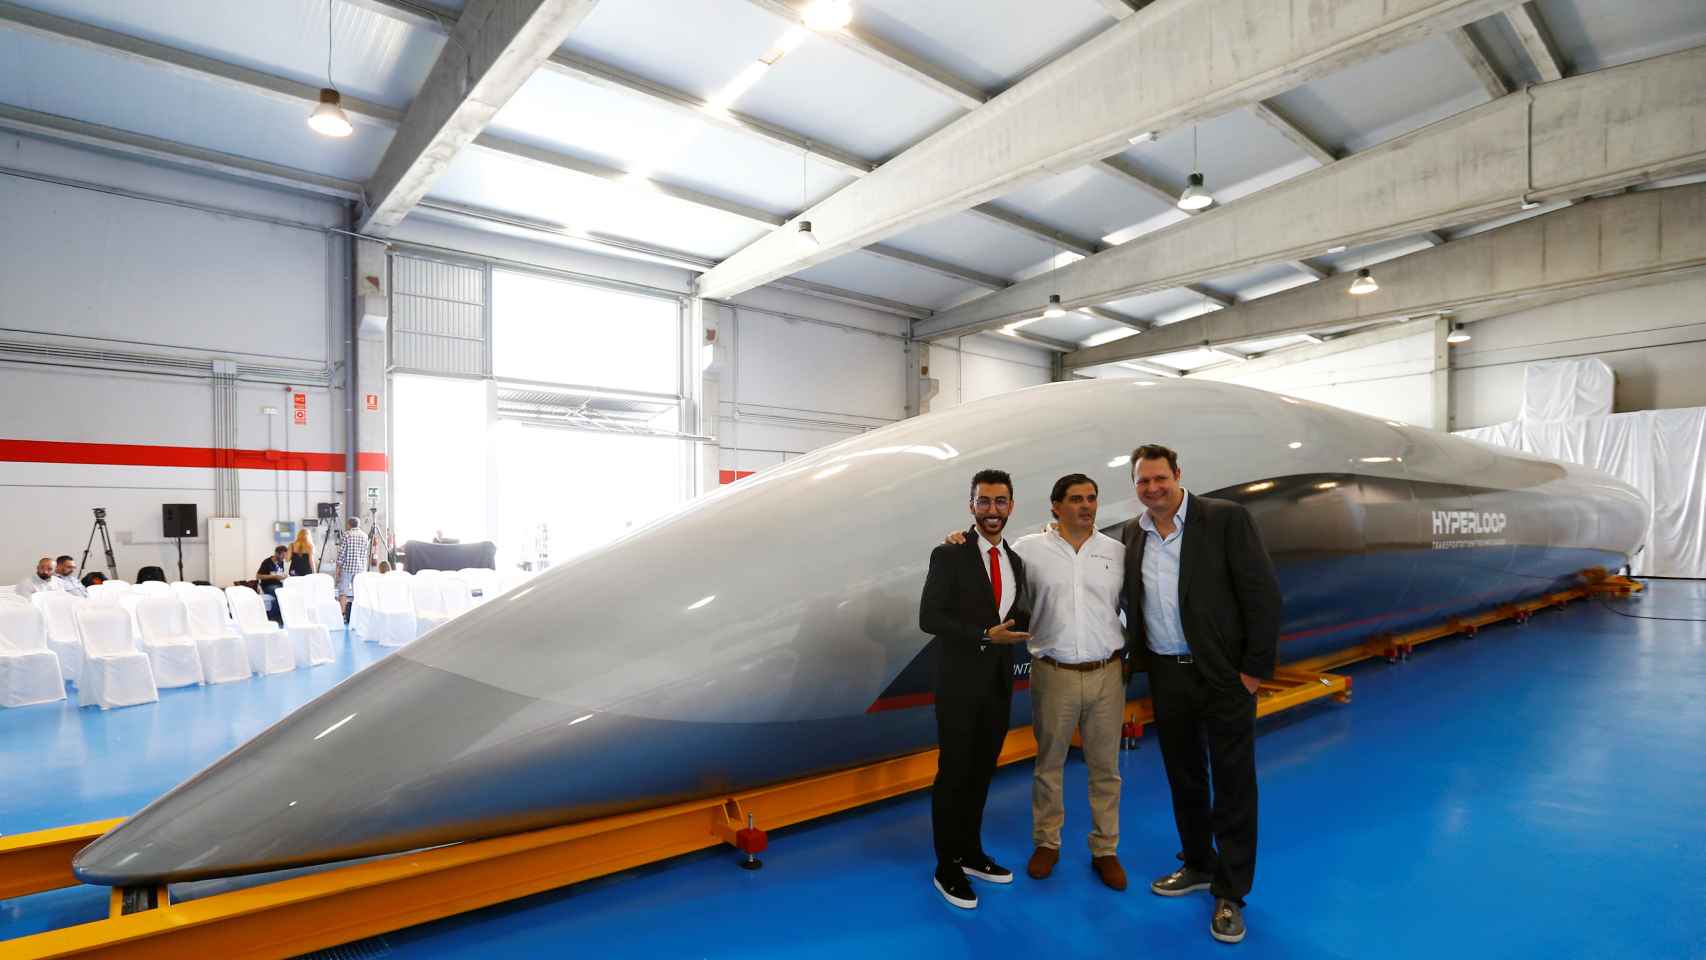 Rafael Contreras, CEO de Airtificial (en el centro) en la presentación de la cápsula de Hyperloop realizada por Airtificial.